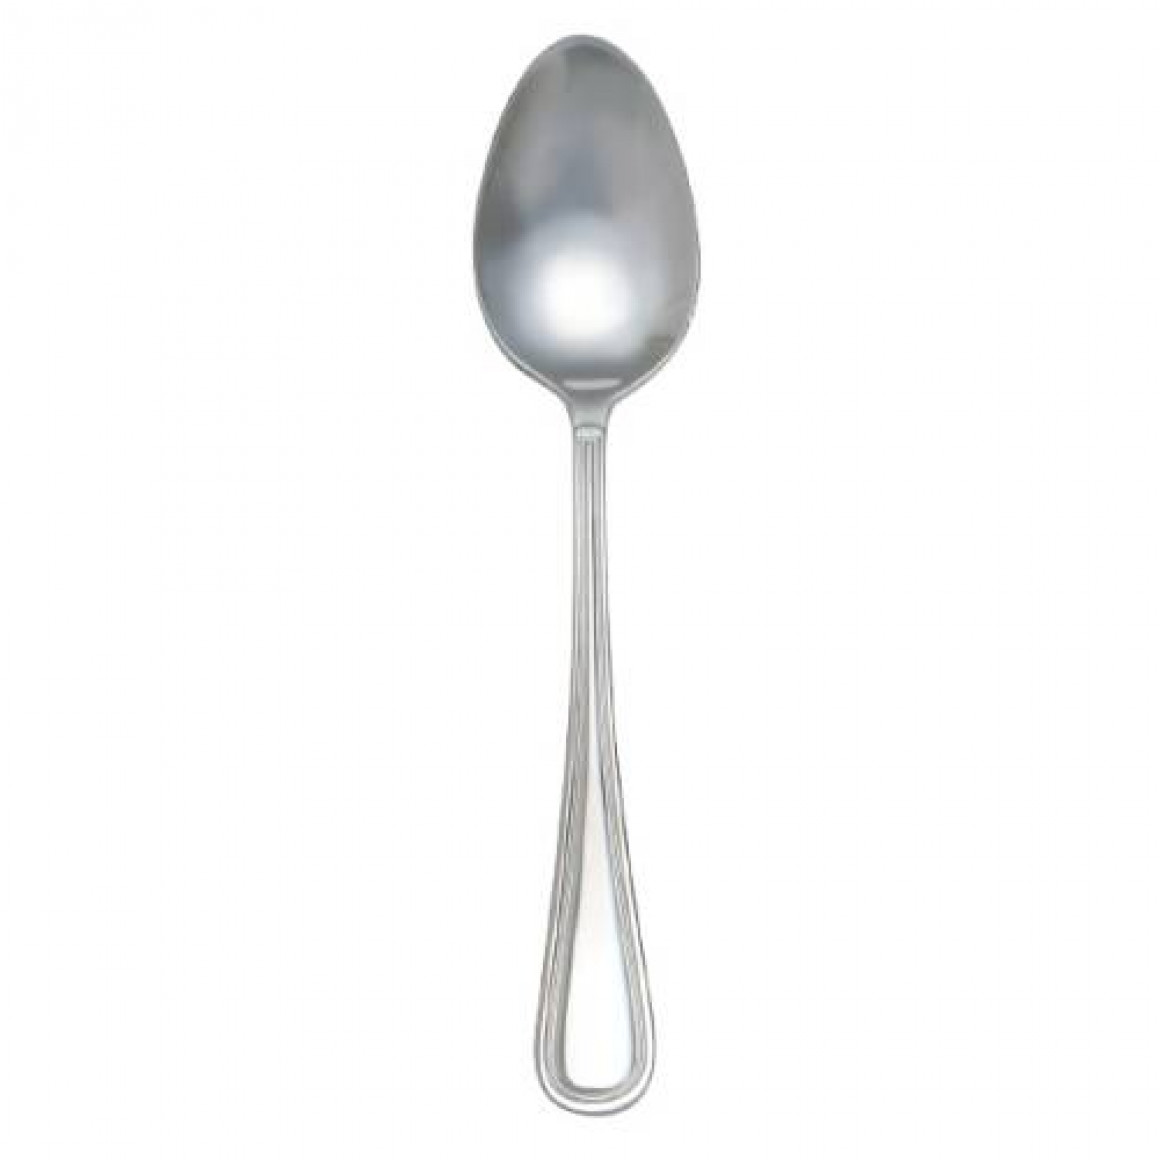 WINDSOR Demitasse spoon